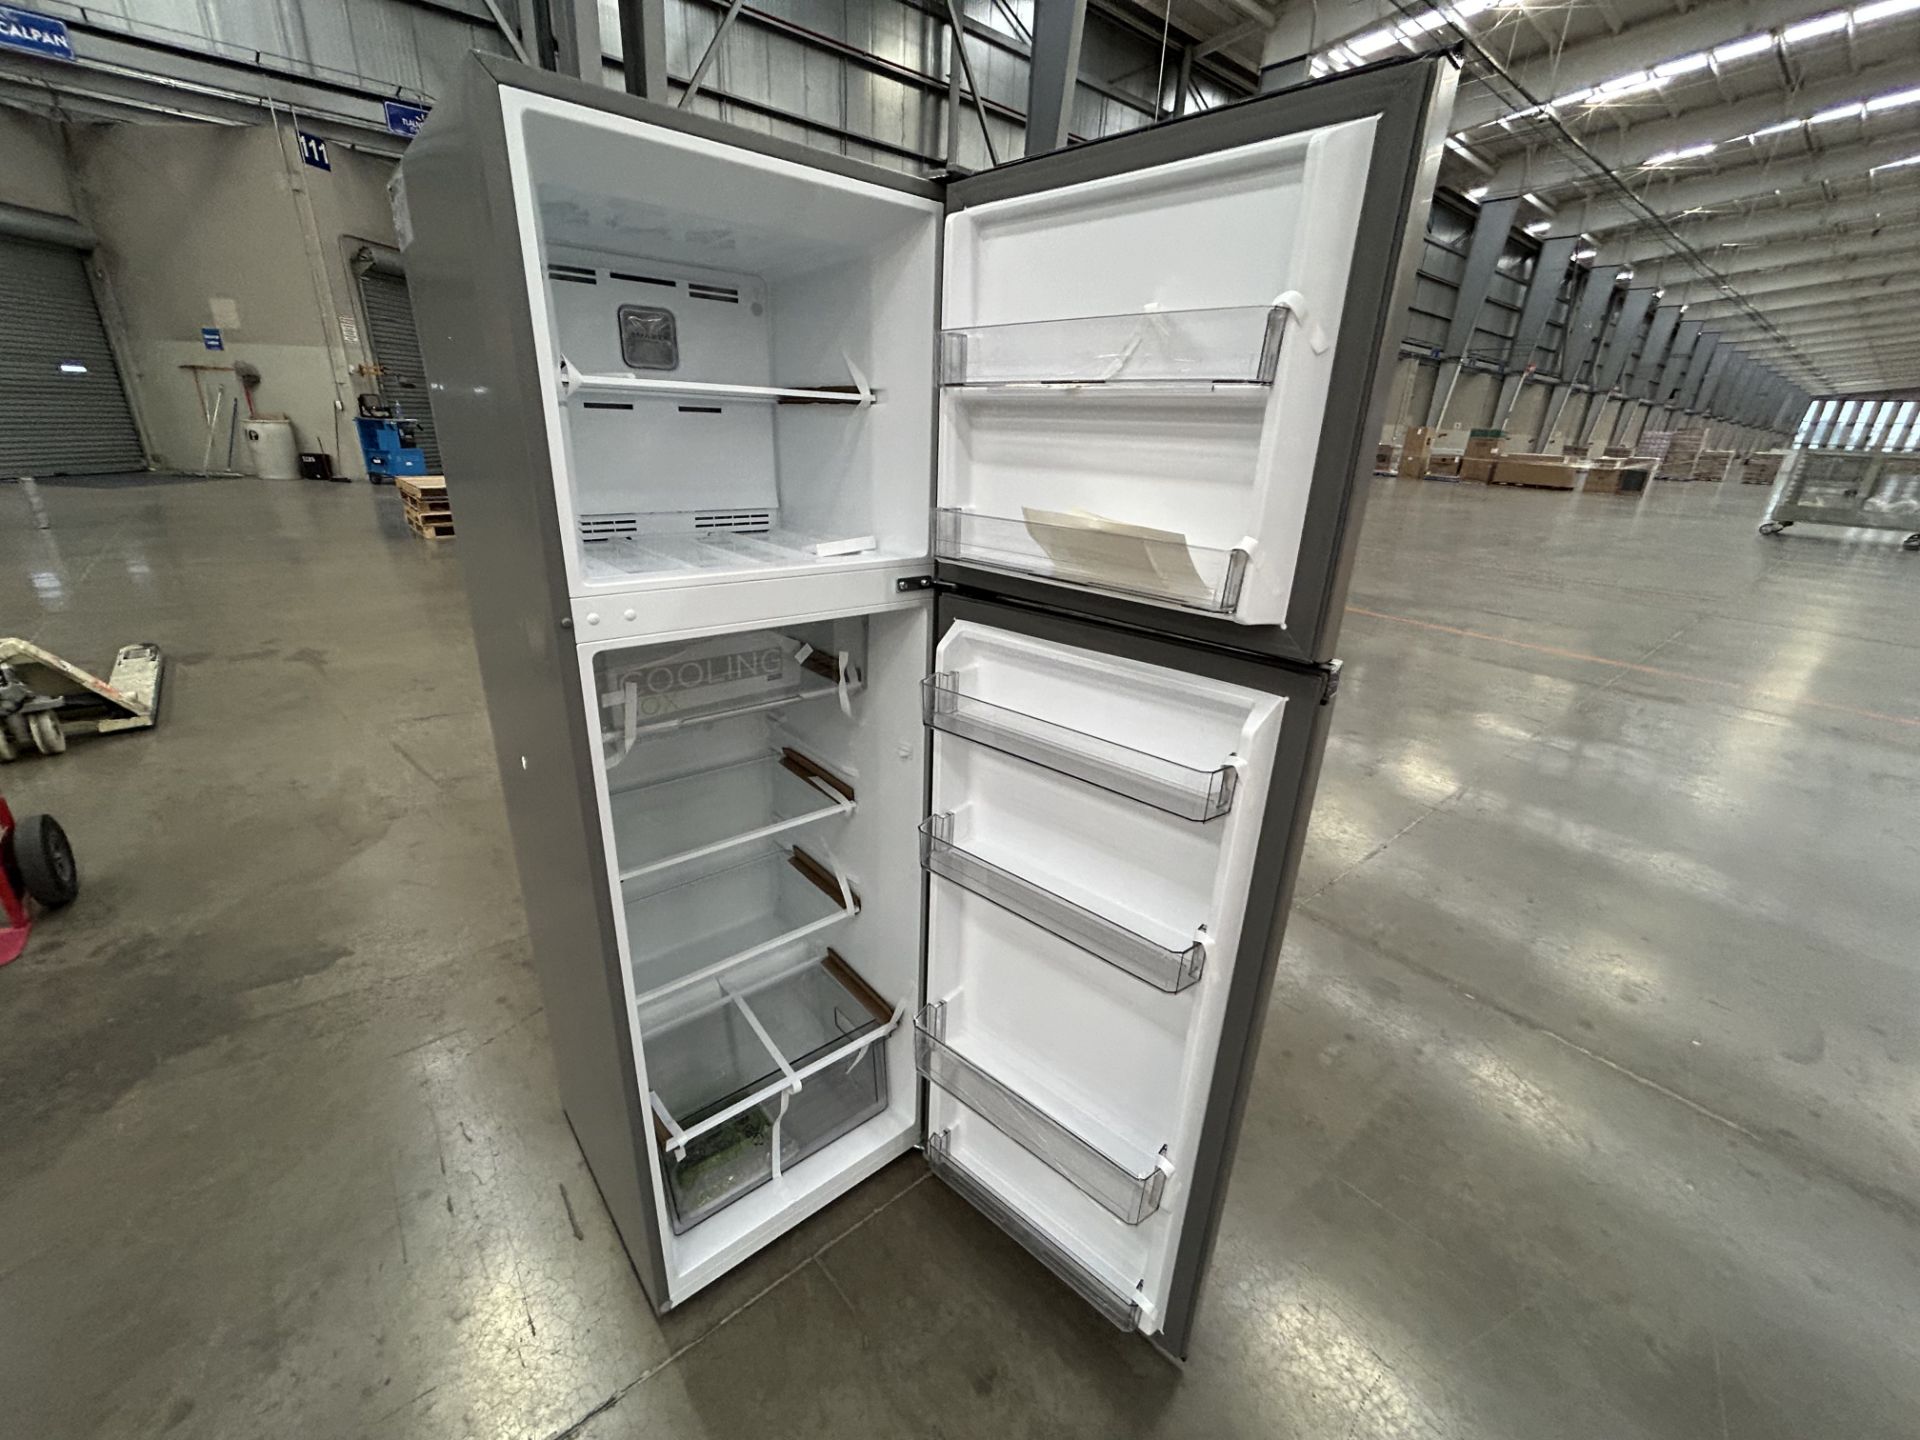 Lote de 2 refrigeradores contiene: 1 refrigerador Marca MIDEA, Modelo MDRT280WINDX, Serie 11872, Co - Image 5 of 6